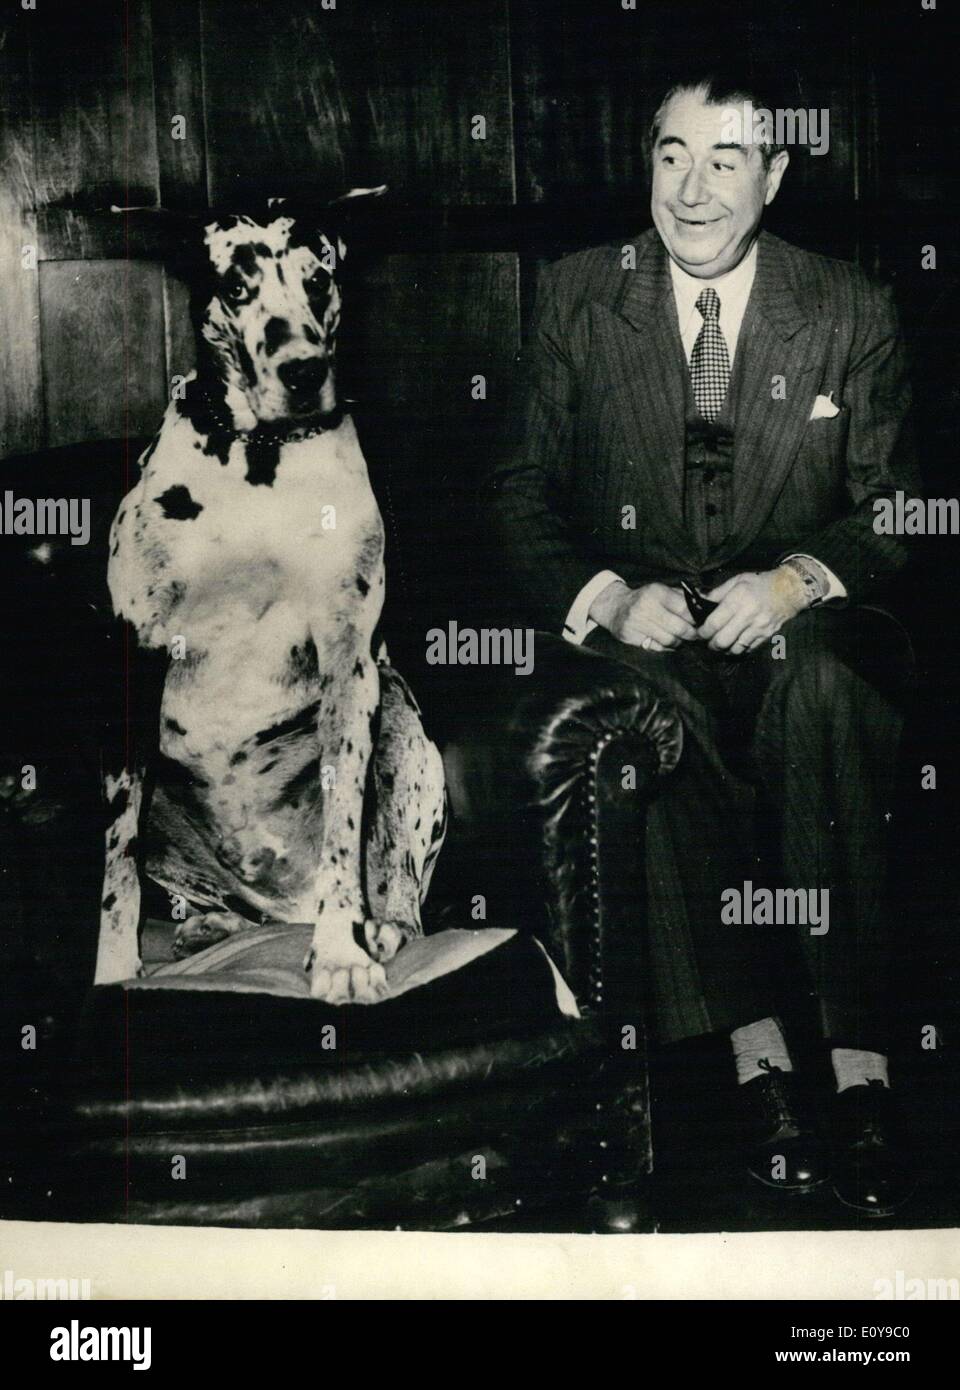 Sett. 05, 1969 - Paul Derval, direttore del ''Folies Bergeres" music hall appena morto nella sua casa di Parigi a 87 anni. Qui egli è con il suo cane preferito. Foto Stock